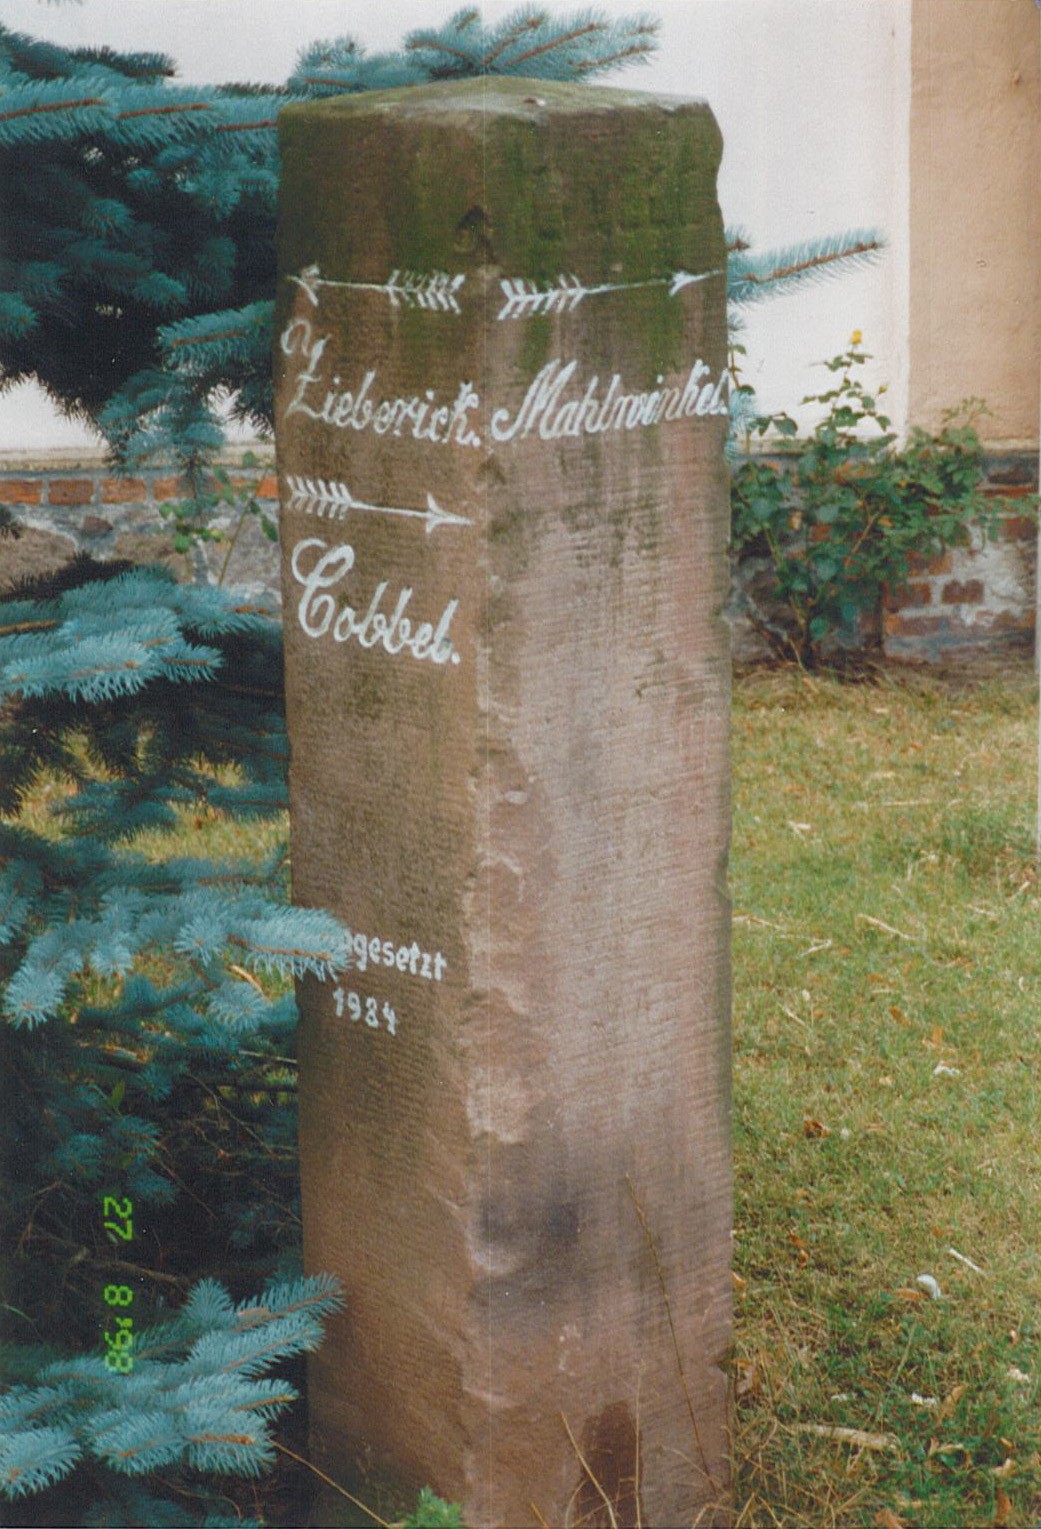 Wegezeichen nach Cobbel, Zibberick, Mahlwinkel, 1984 (Museum Wolmirstedt RR-F)